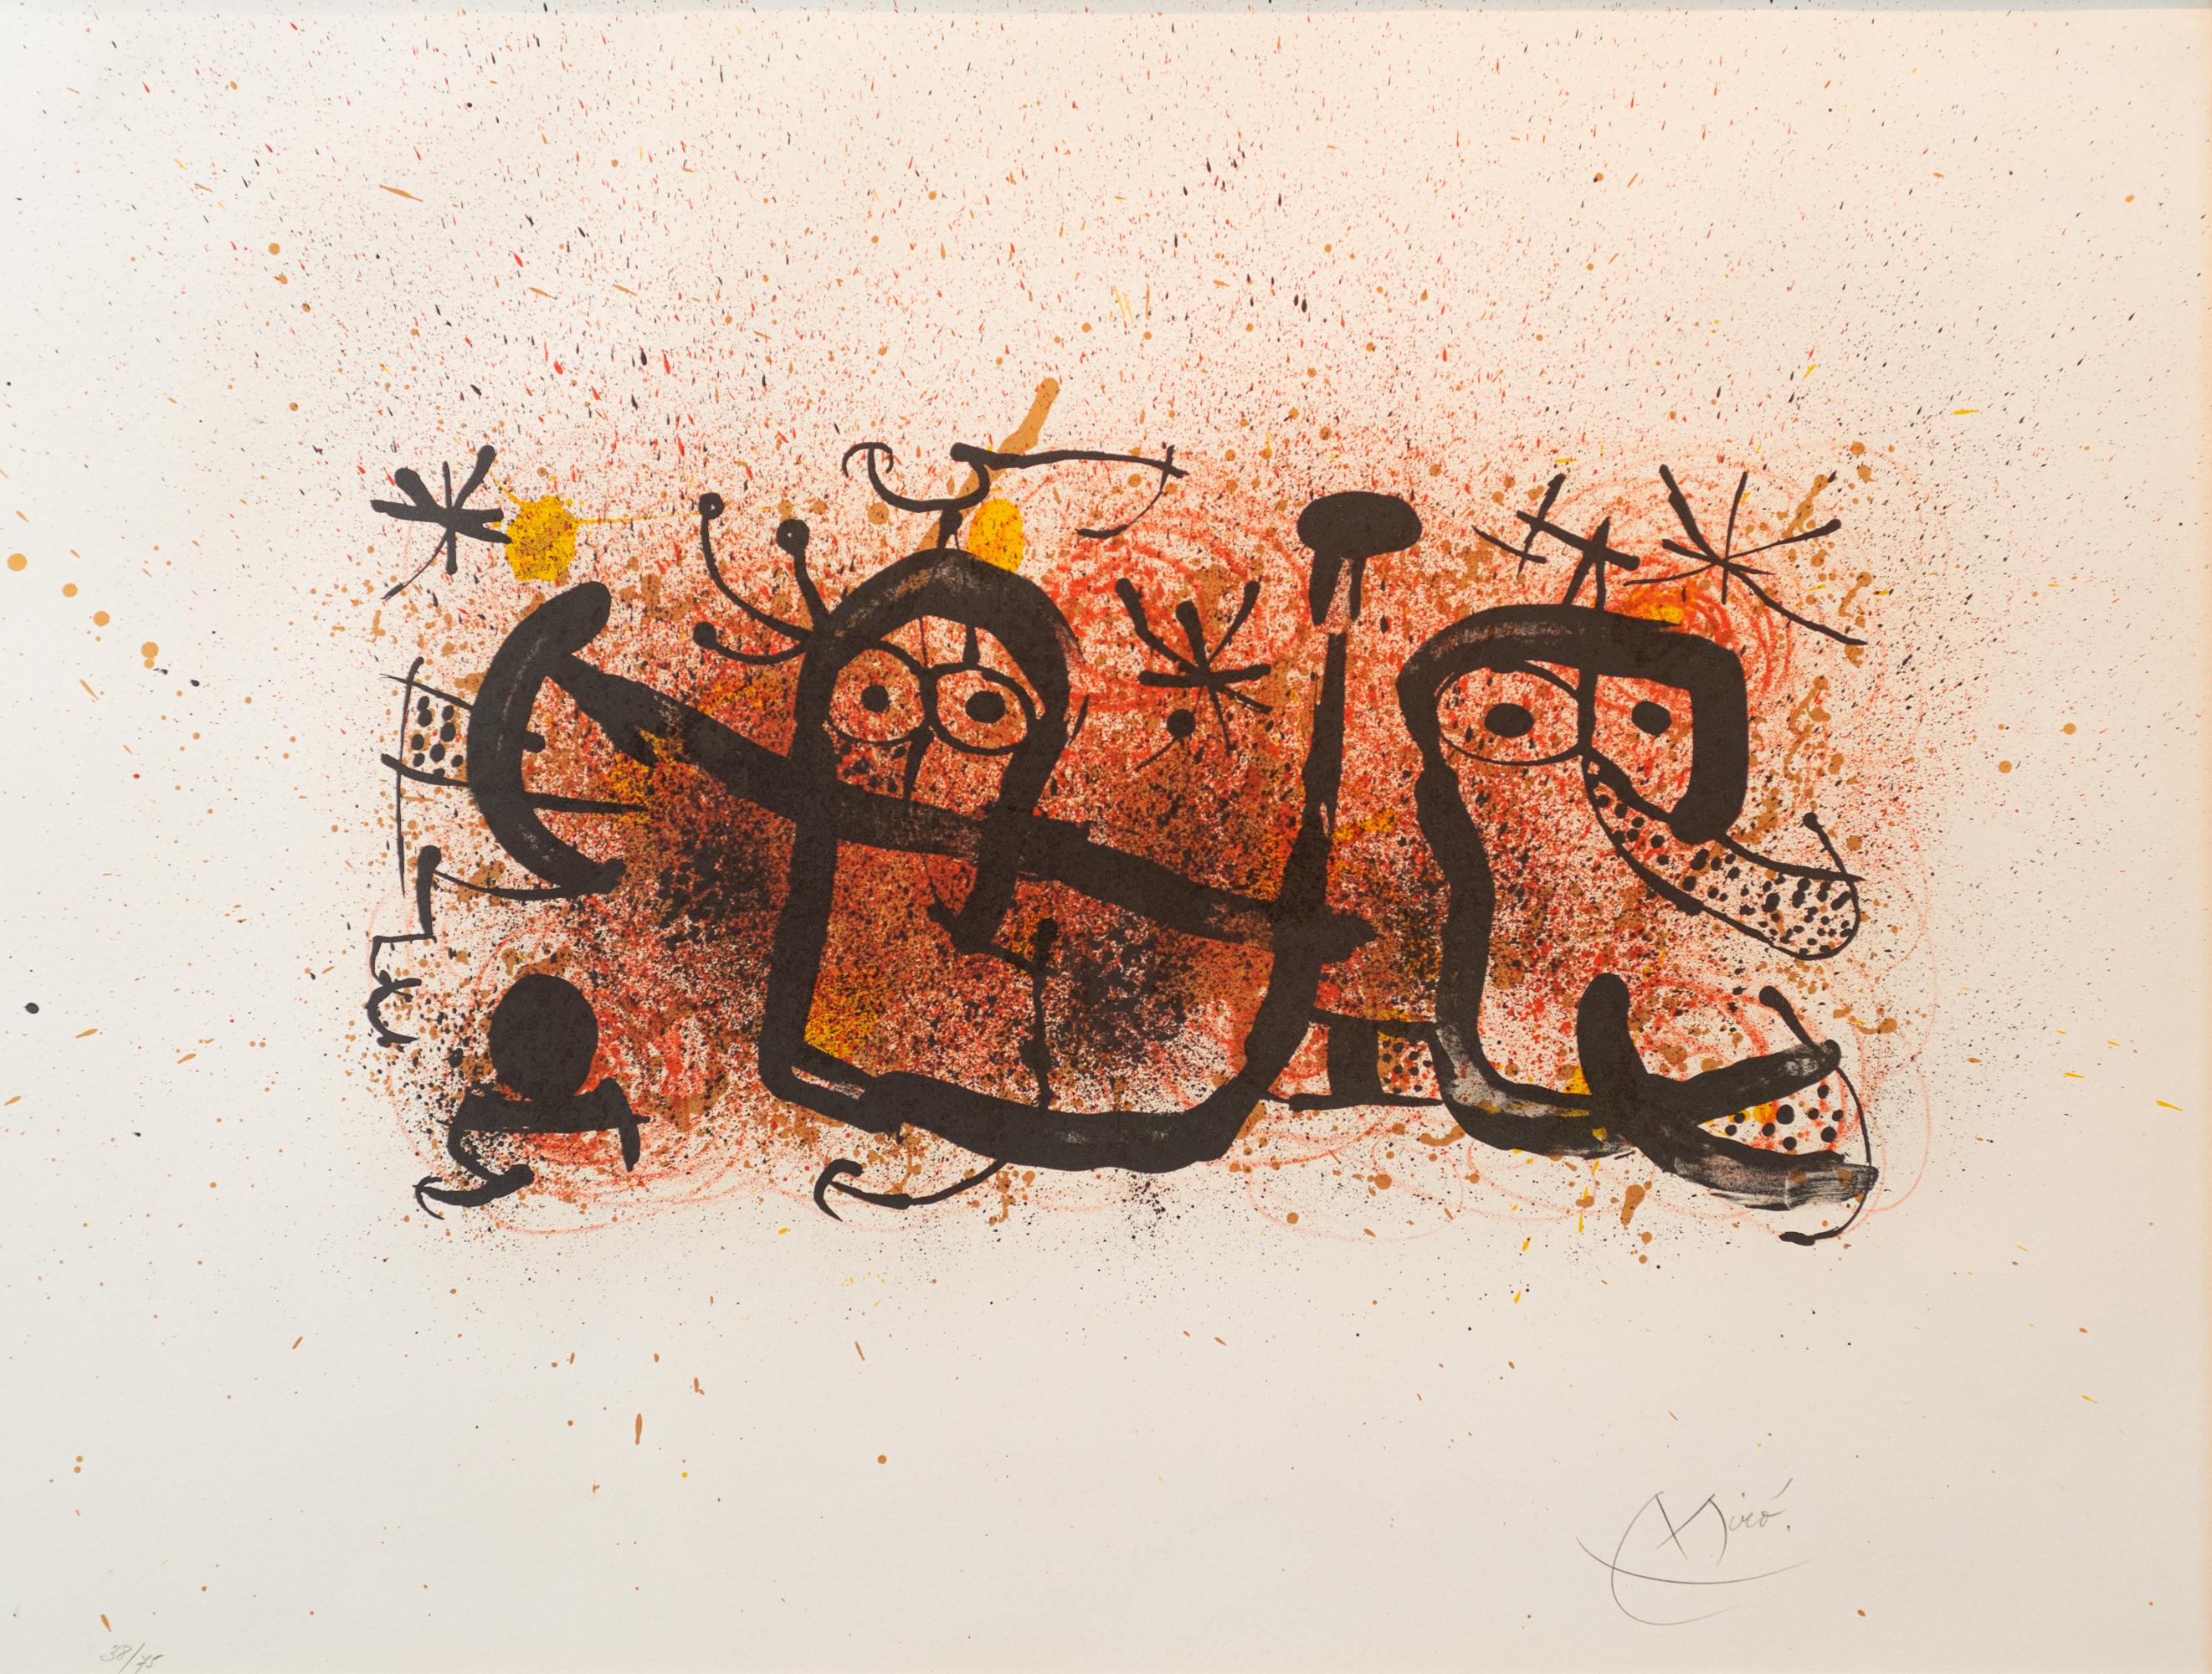 Joan Miró Abstract Print - Ma de Proverbis